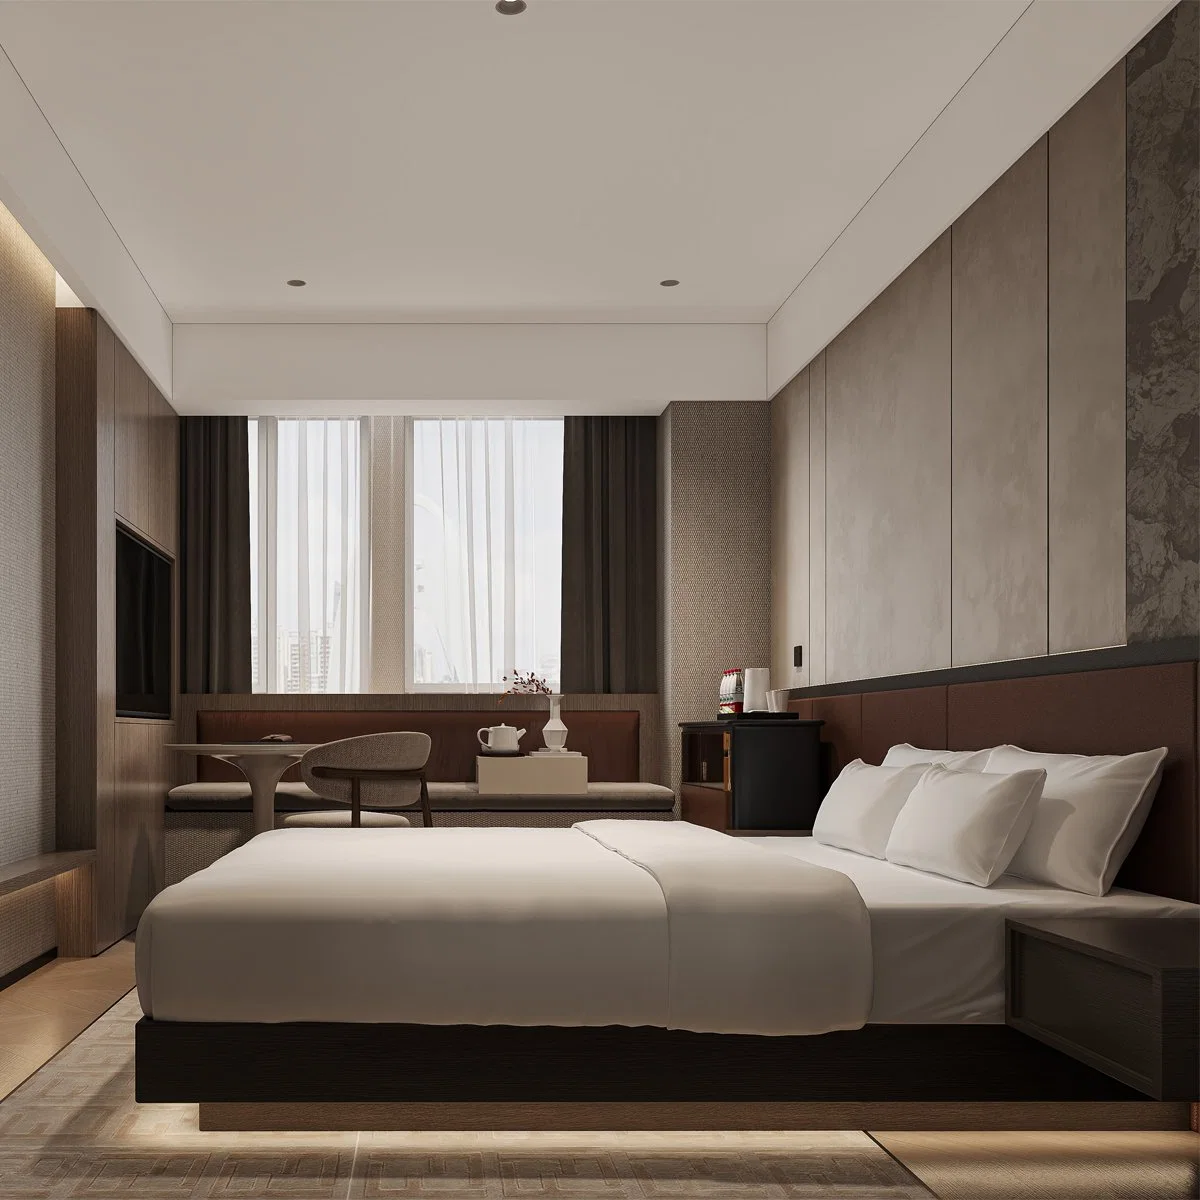 Venda por grosso fornecedores chineses Contrato de alta qualidade mobiliário de hospitalidade comercial